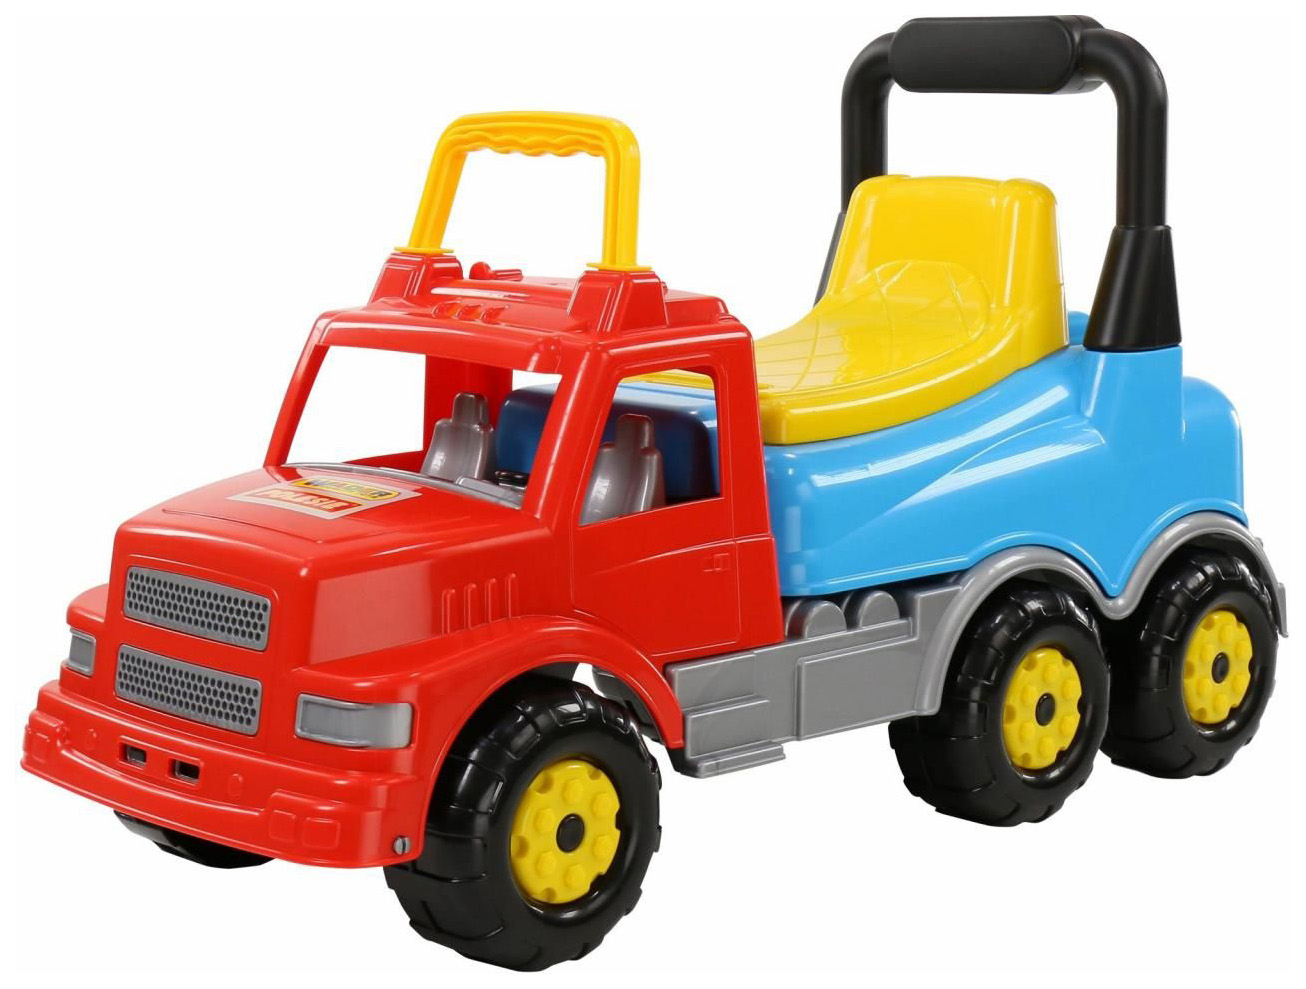 Купить Детский транспорт, Каталка детская Wader машина Буран №2 красно-голубая,